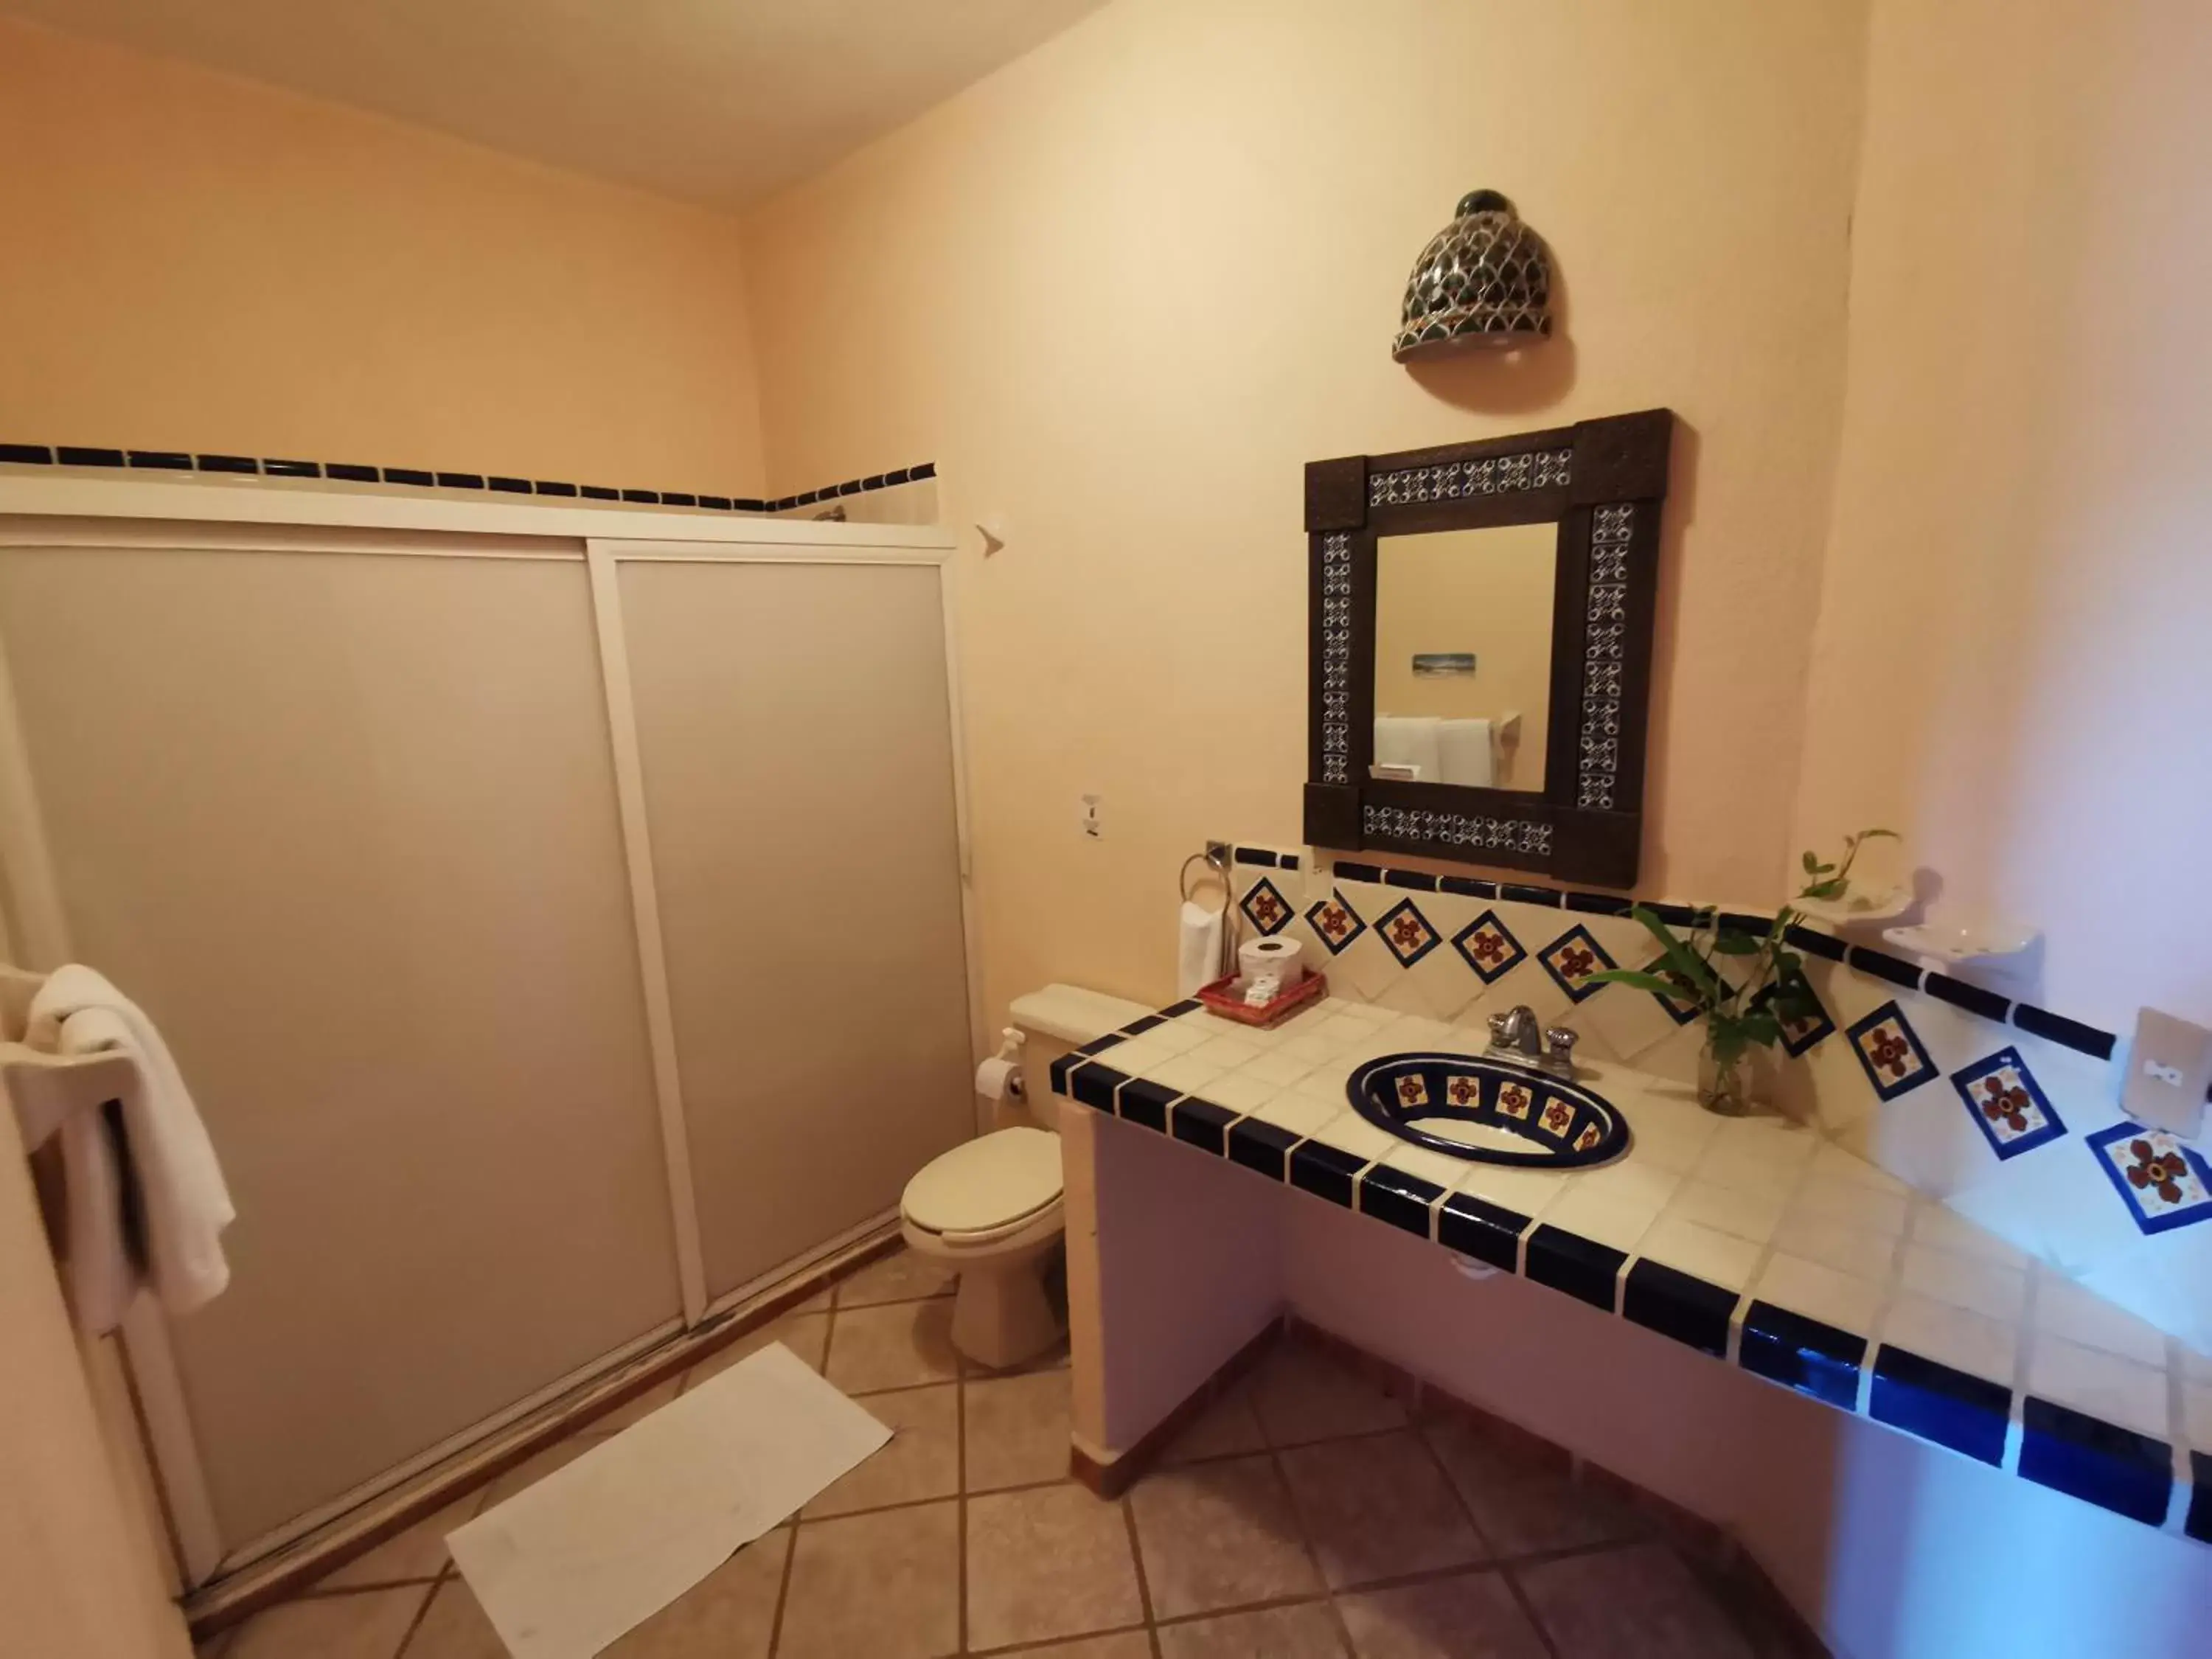 Bathroom in Villas Vista Suites